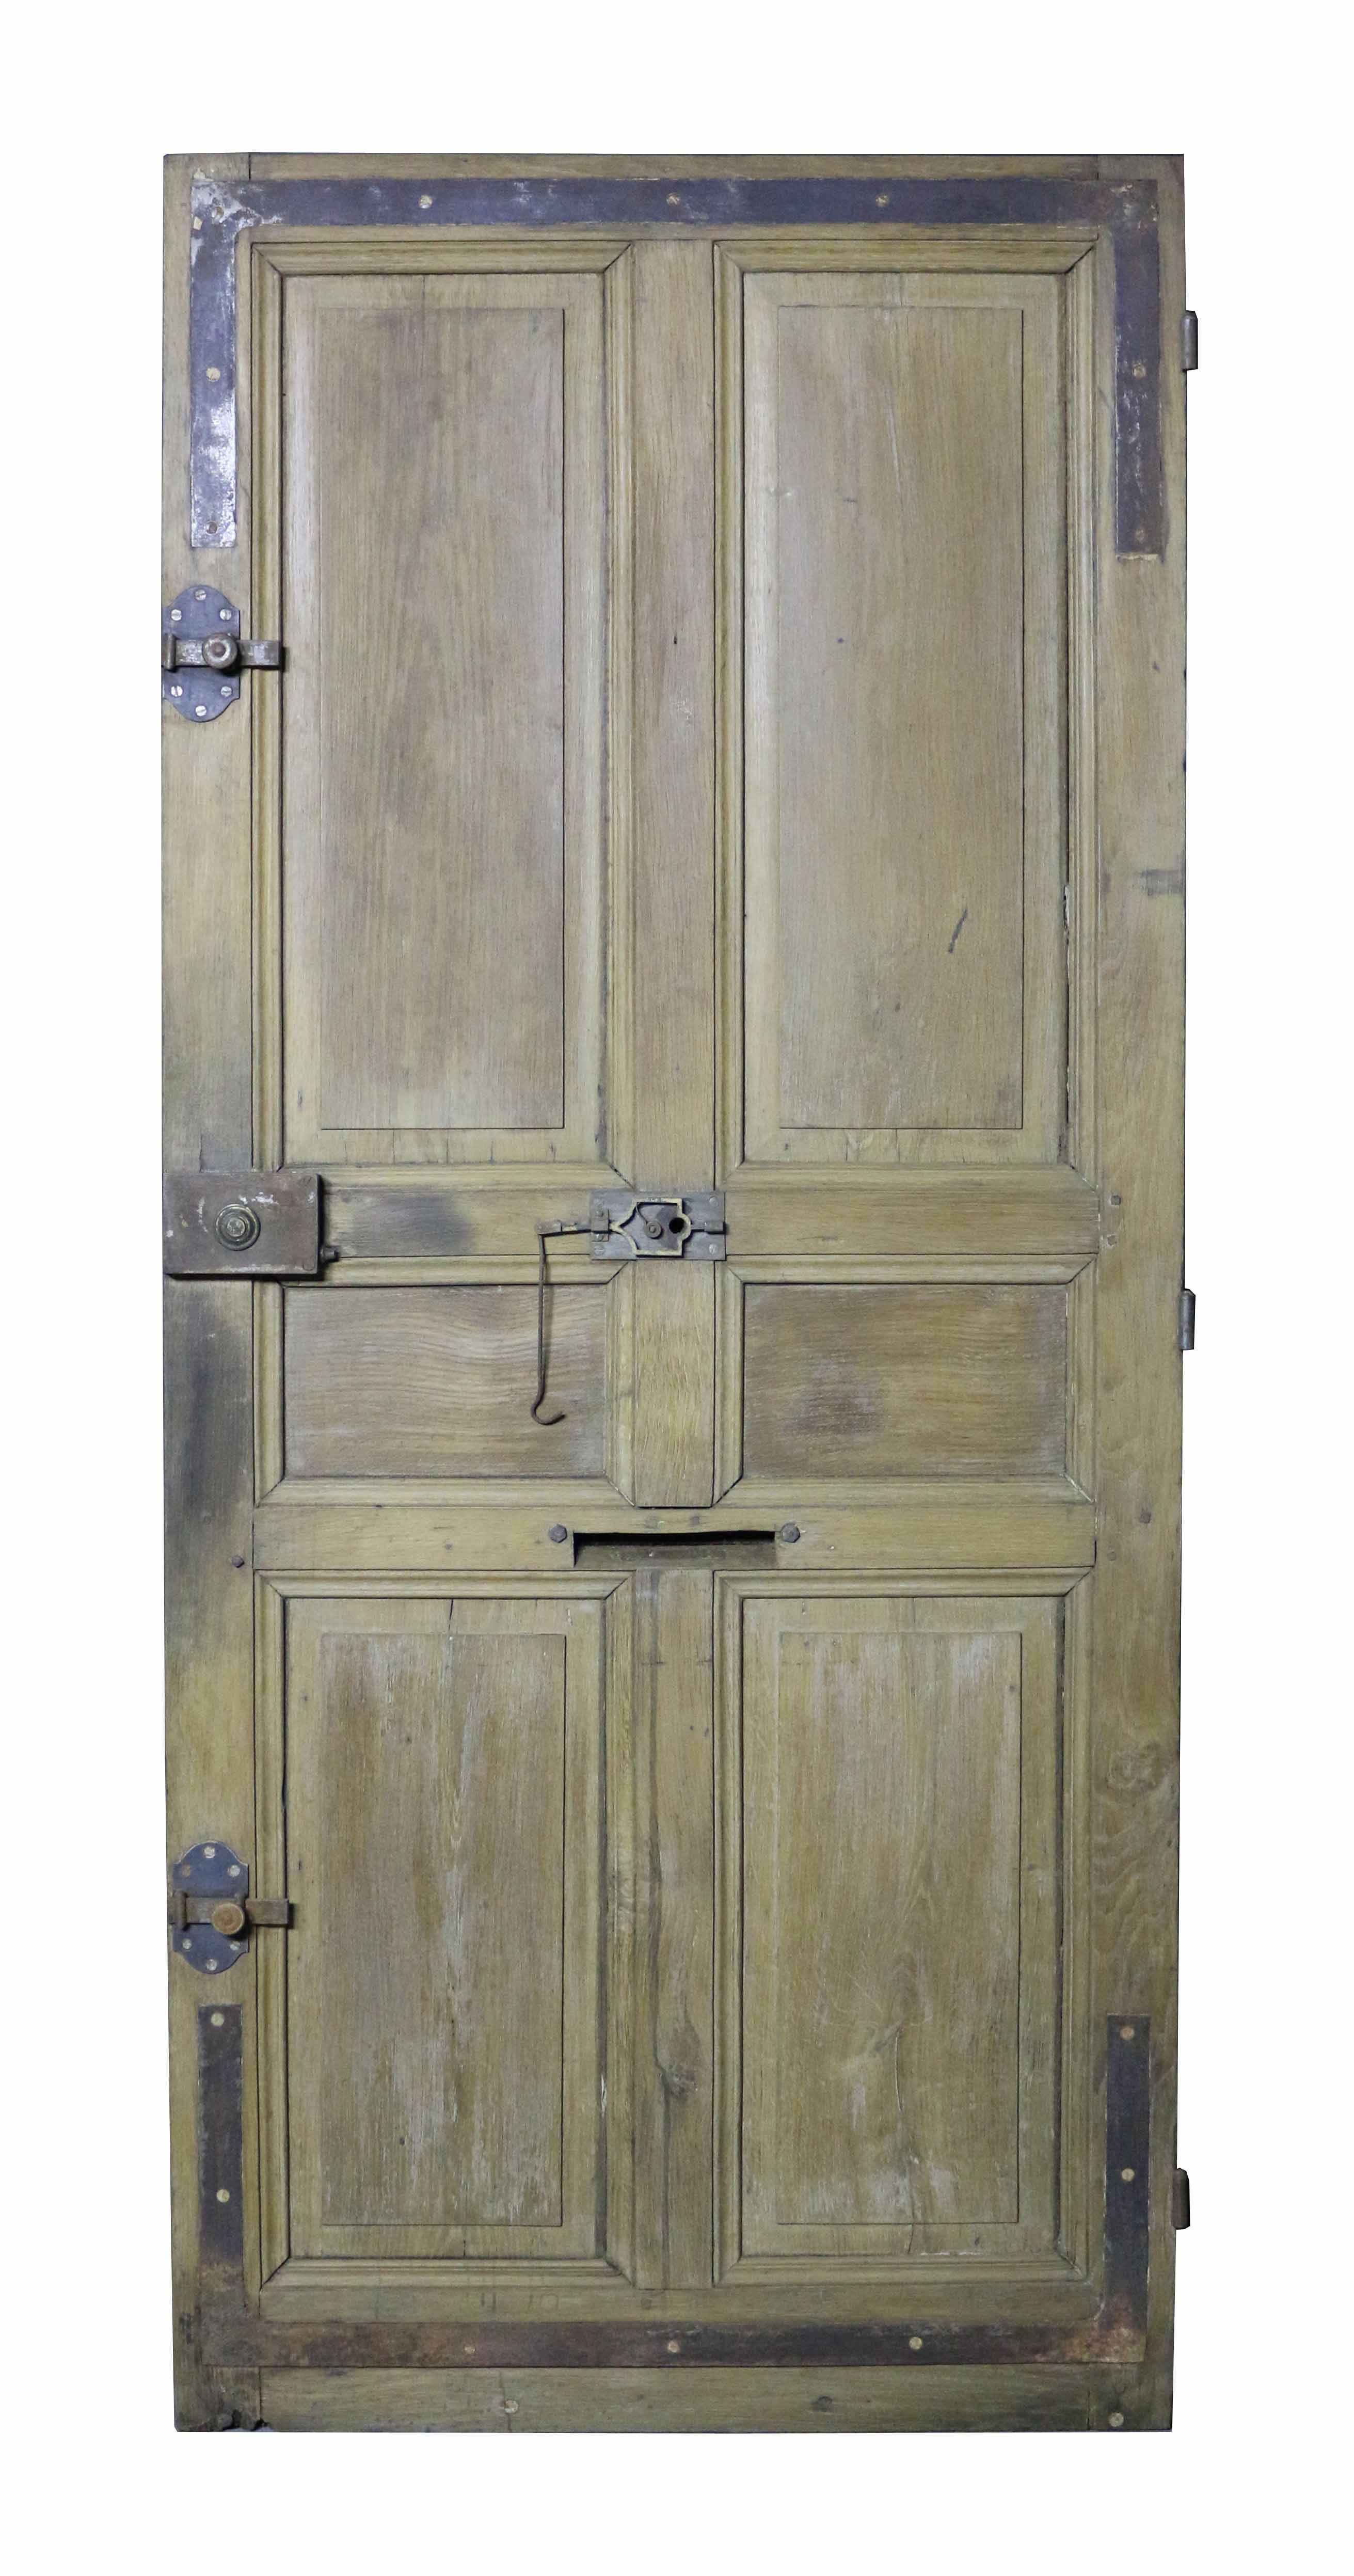 Antique French oak front door. This door is in good condition.